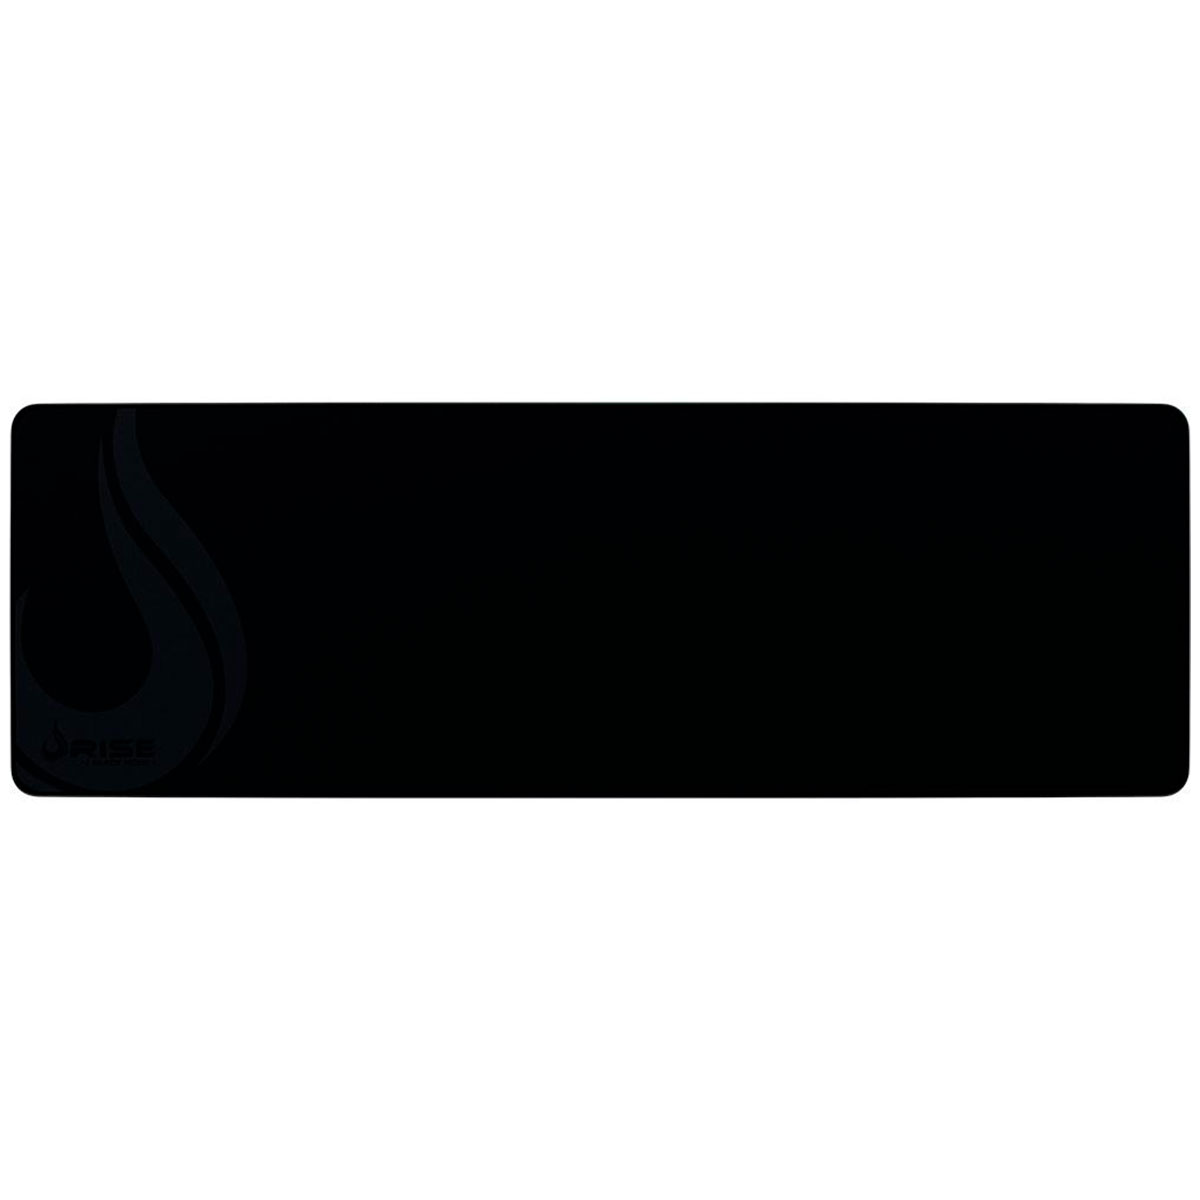 Mousepad Gamer Rise Mode Full Black - Extra Grande: 900 x 300mm - RG-MP-06-FBK